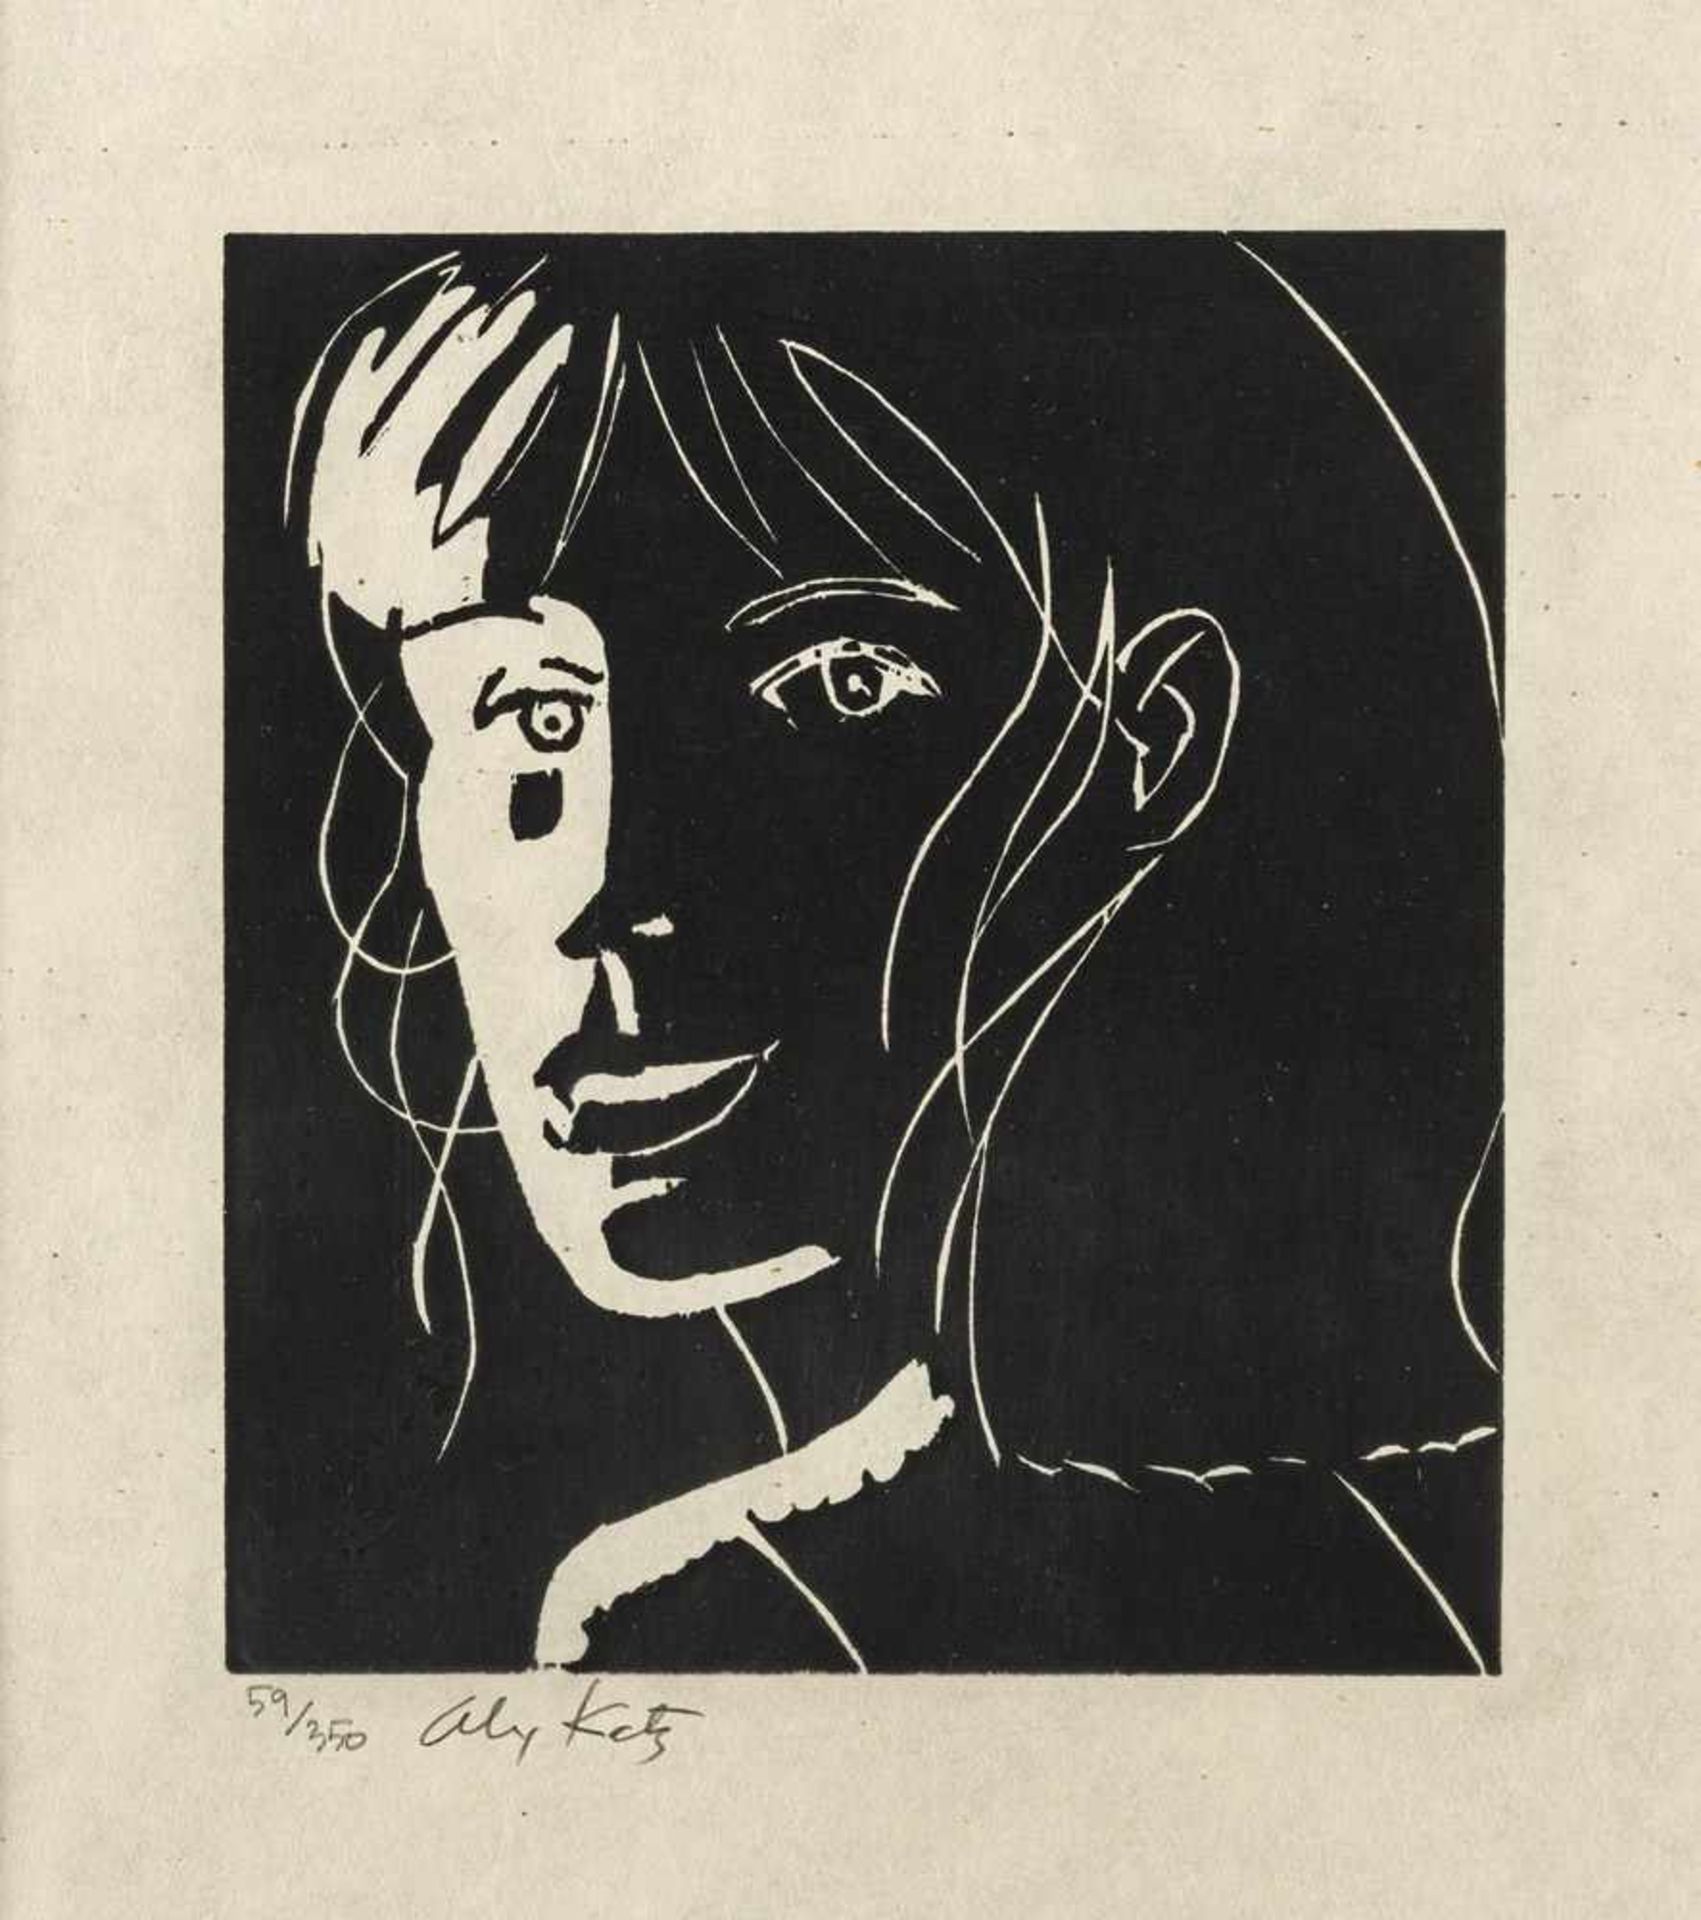 Katz, AlexNew York, geboren 192716,5 x 14,3cm,R.Cecily, 2002. Holzschnitt auf Papier. I